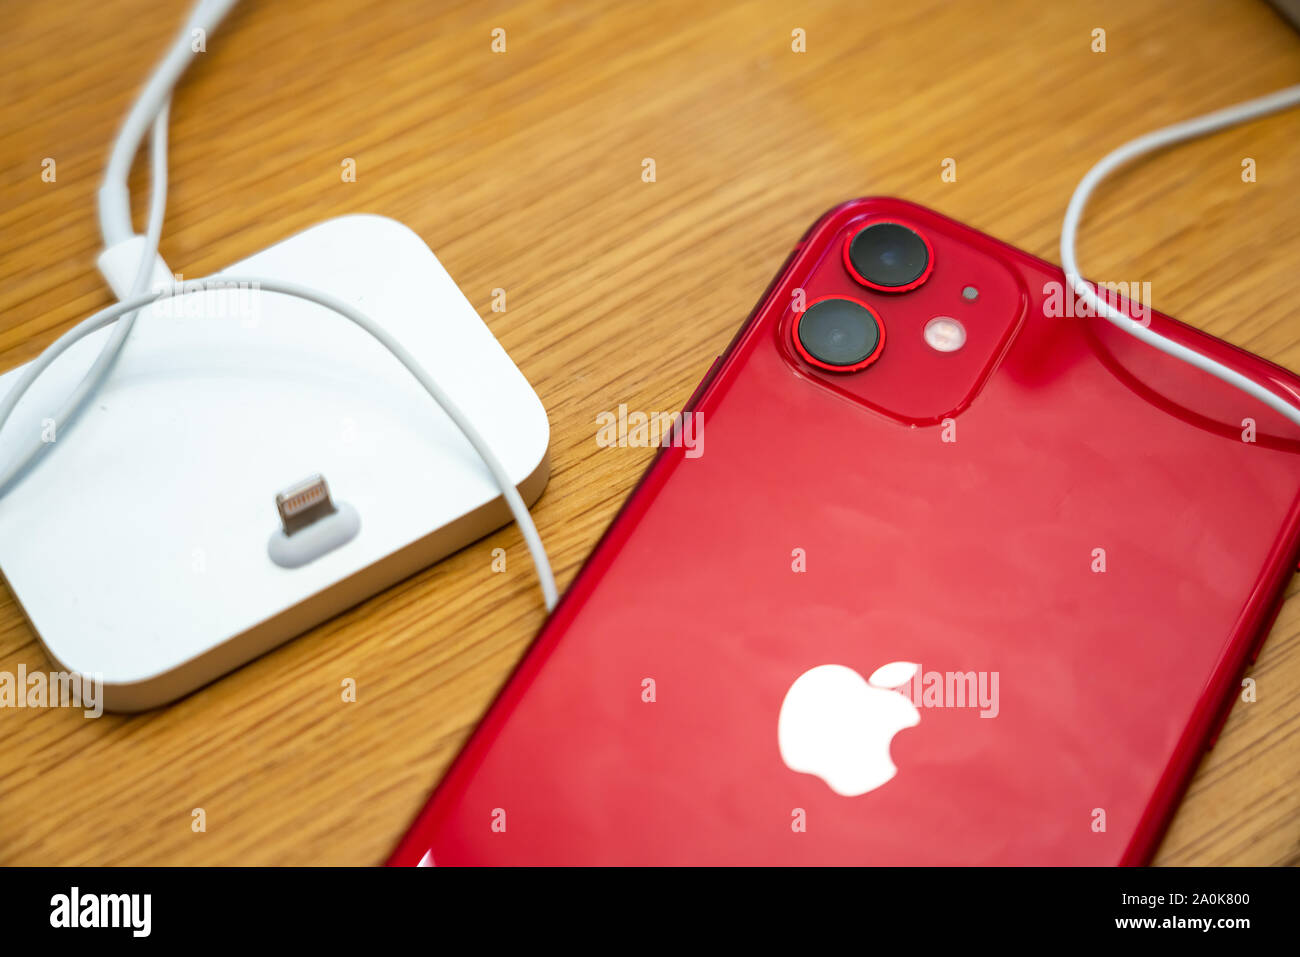 Ein neuer Apple iPhone 11 Modell, das über einen Dual hintere Kamera Design, dargestellt in einem Apple Store an der IFC Mall in Pudong New Area, Shanghai. Apple hat den Vertrieb seiner neuesten iPhone 11 Serie in China. Stockfoto